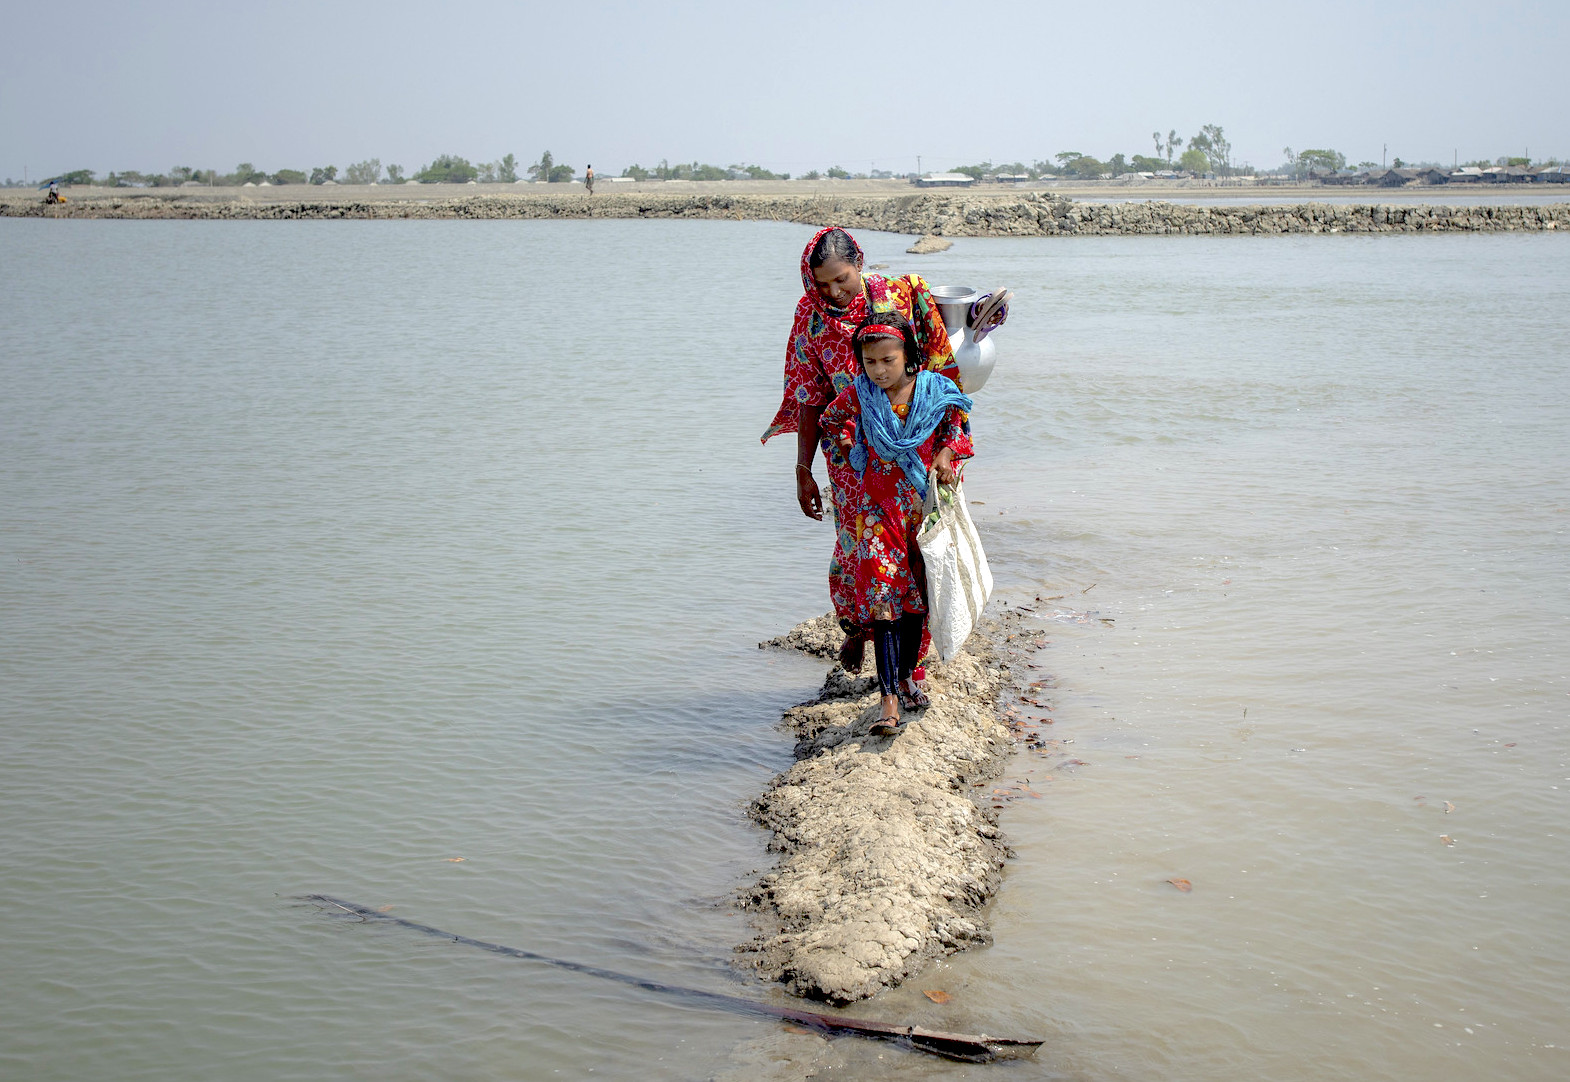 ارتفاع منسوب مياه البحر في بنغلاديش يدفع النساء لتناول حبوب منع الحمل لإيقاف دورتهنّ الشهرية